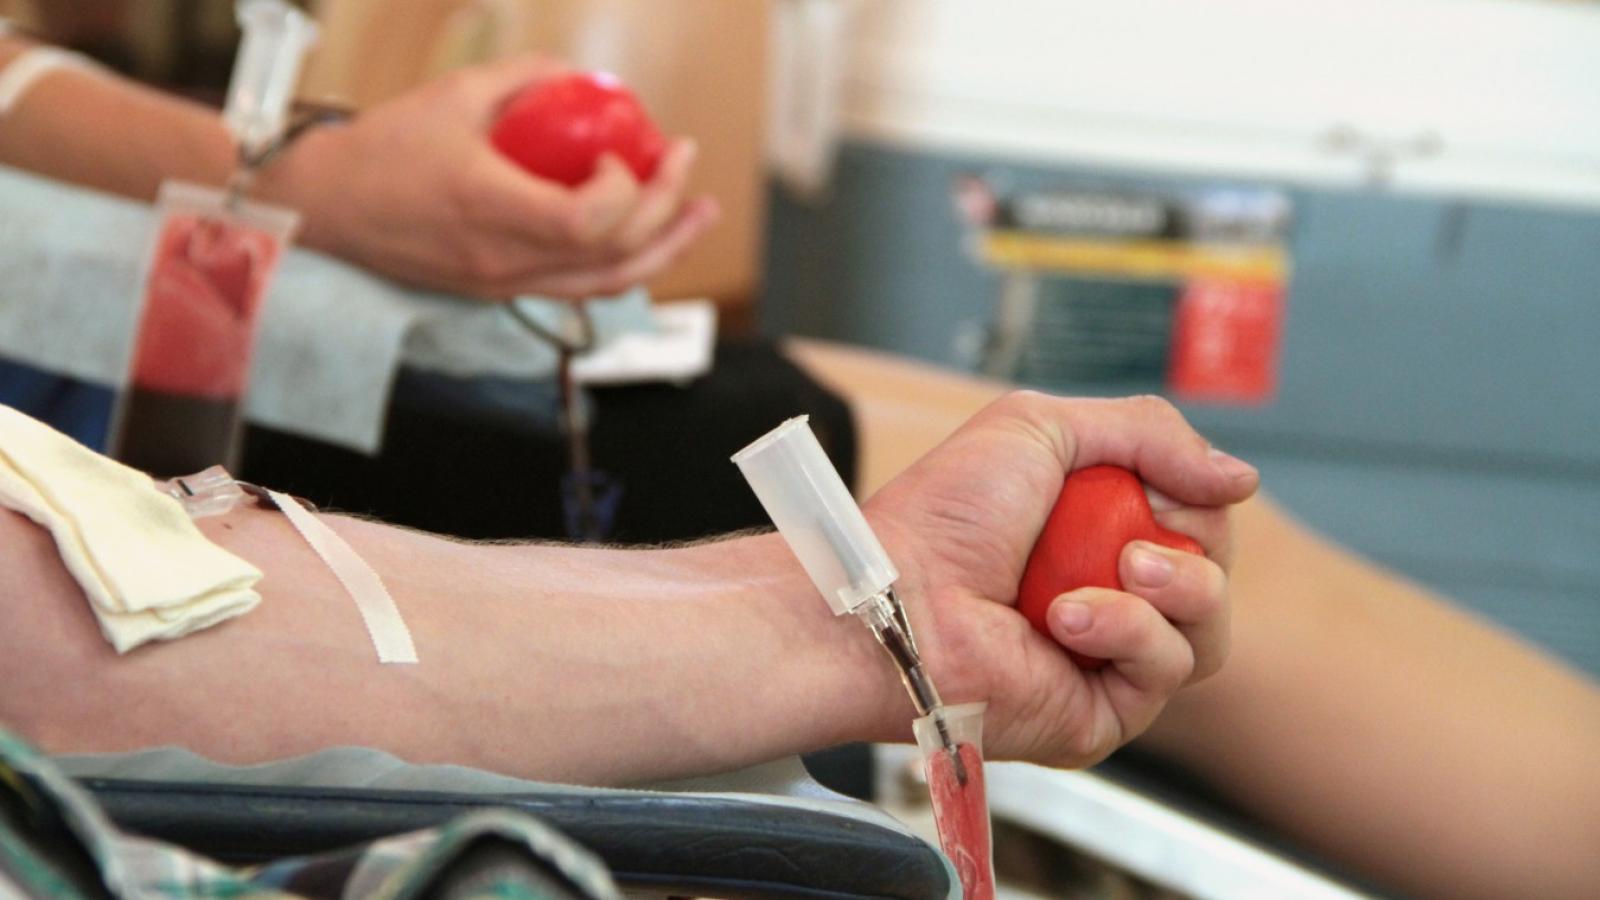 70 вологжан сдали более 30 литров крови в «Субботу донора» 